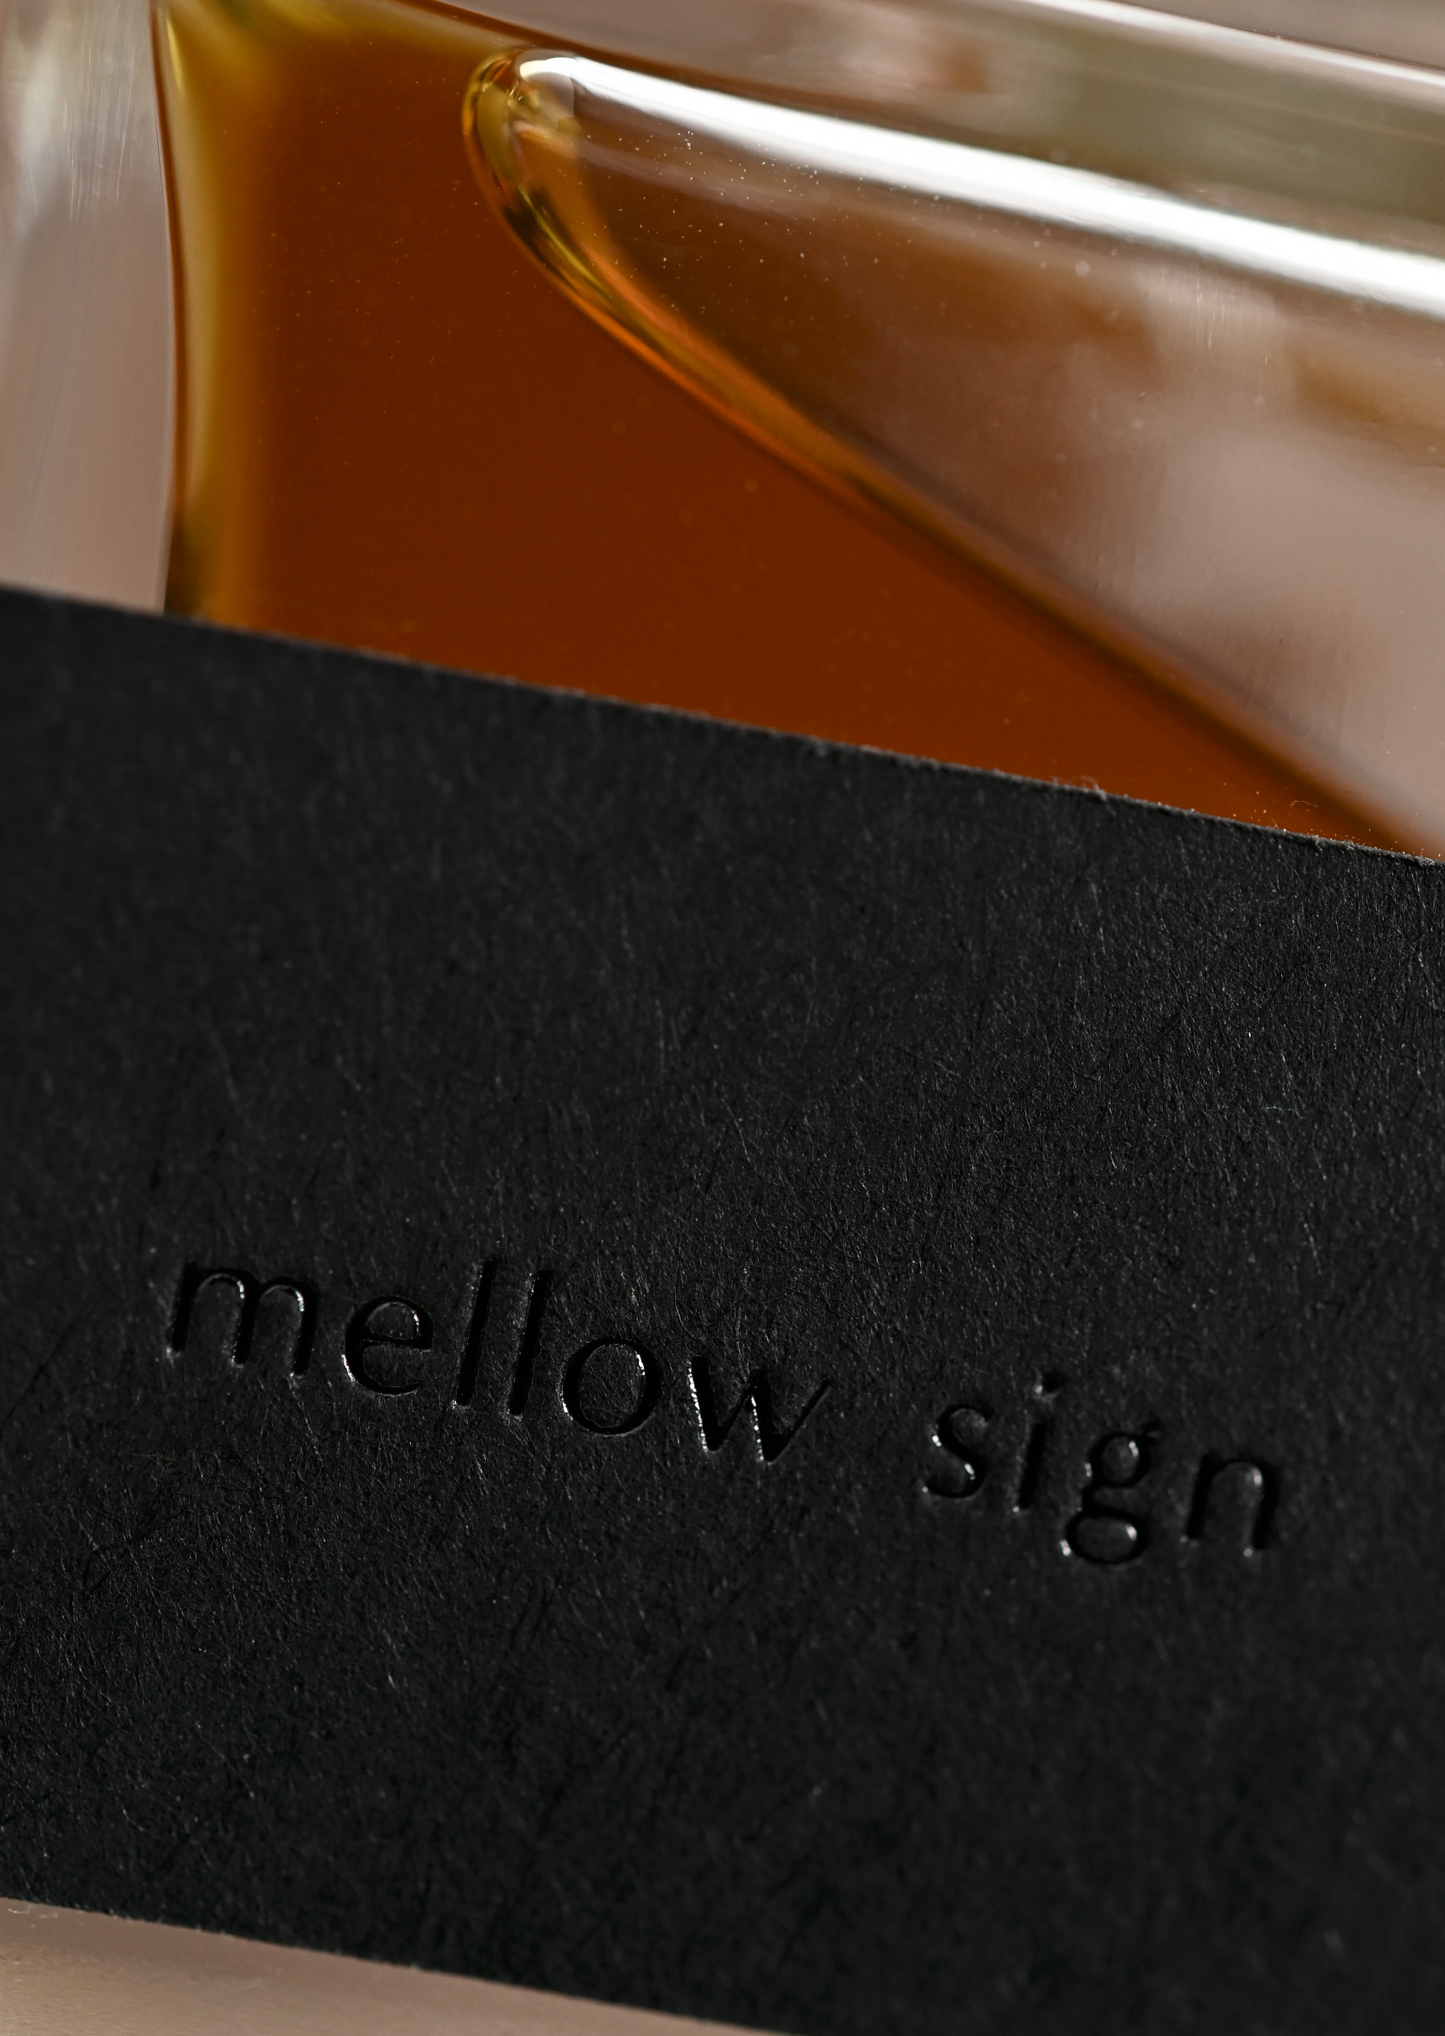 dō the perfume mellow sign